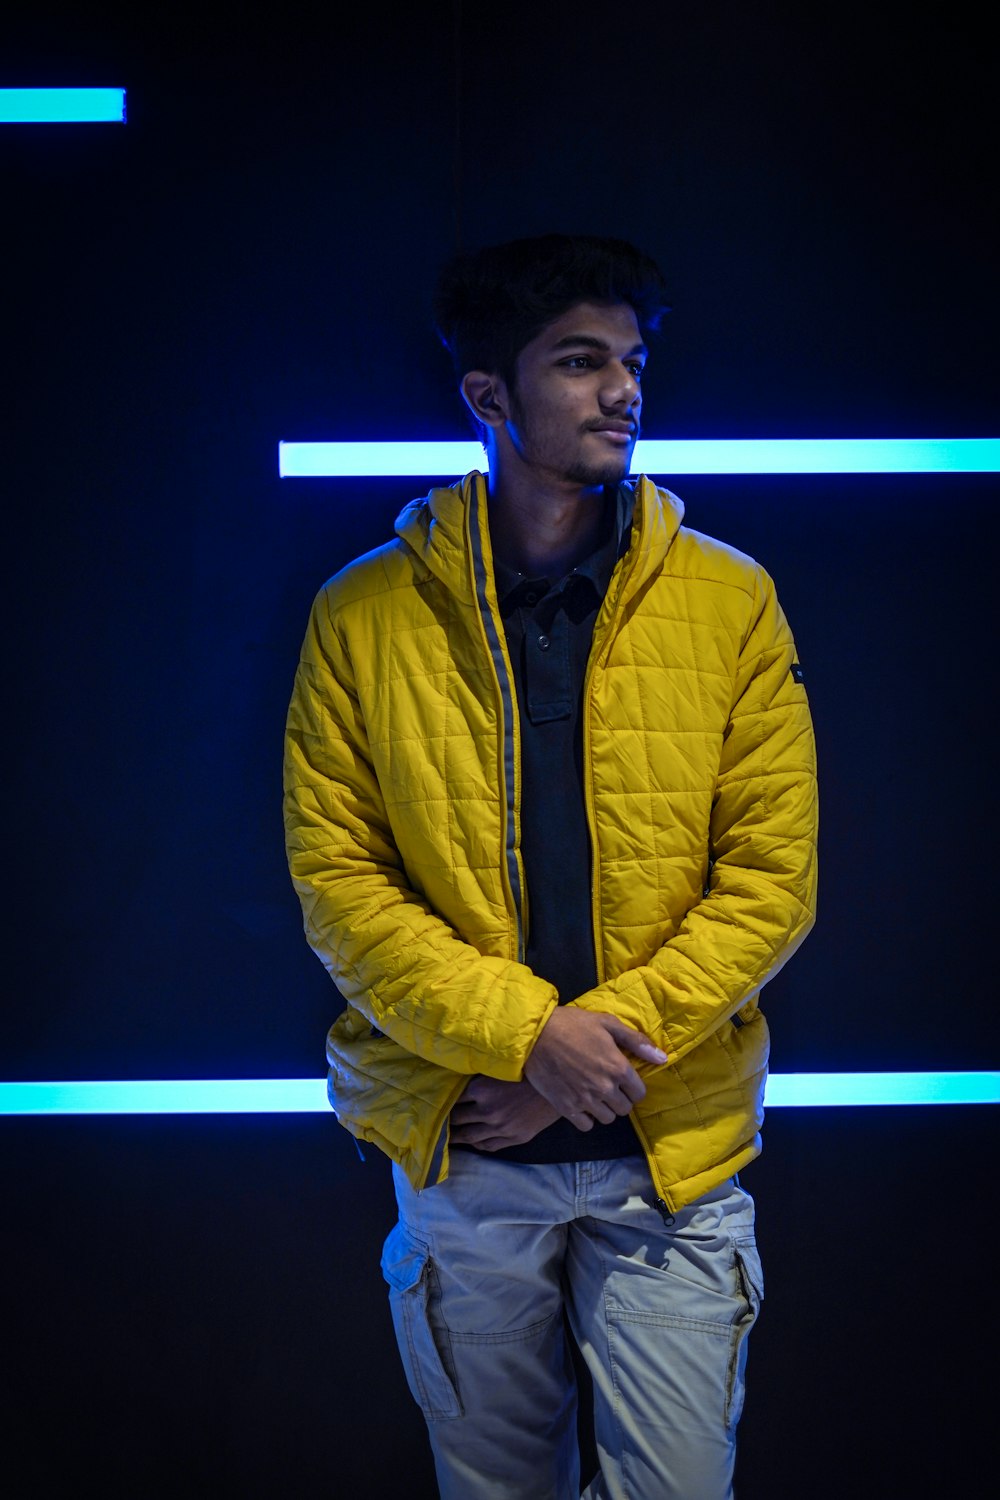 man in yellow zip up jacket